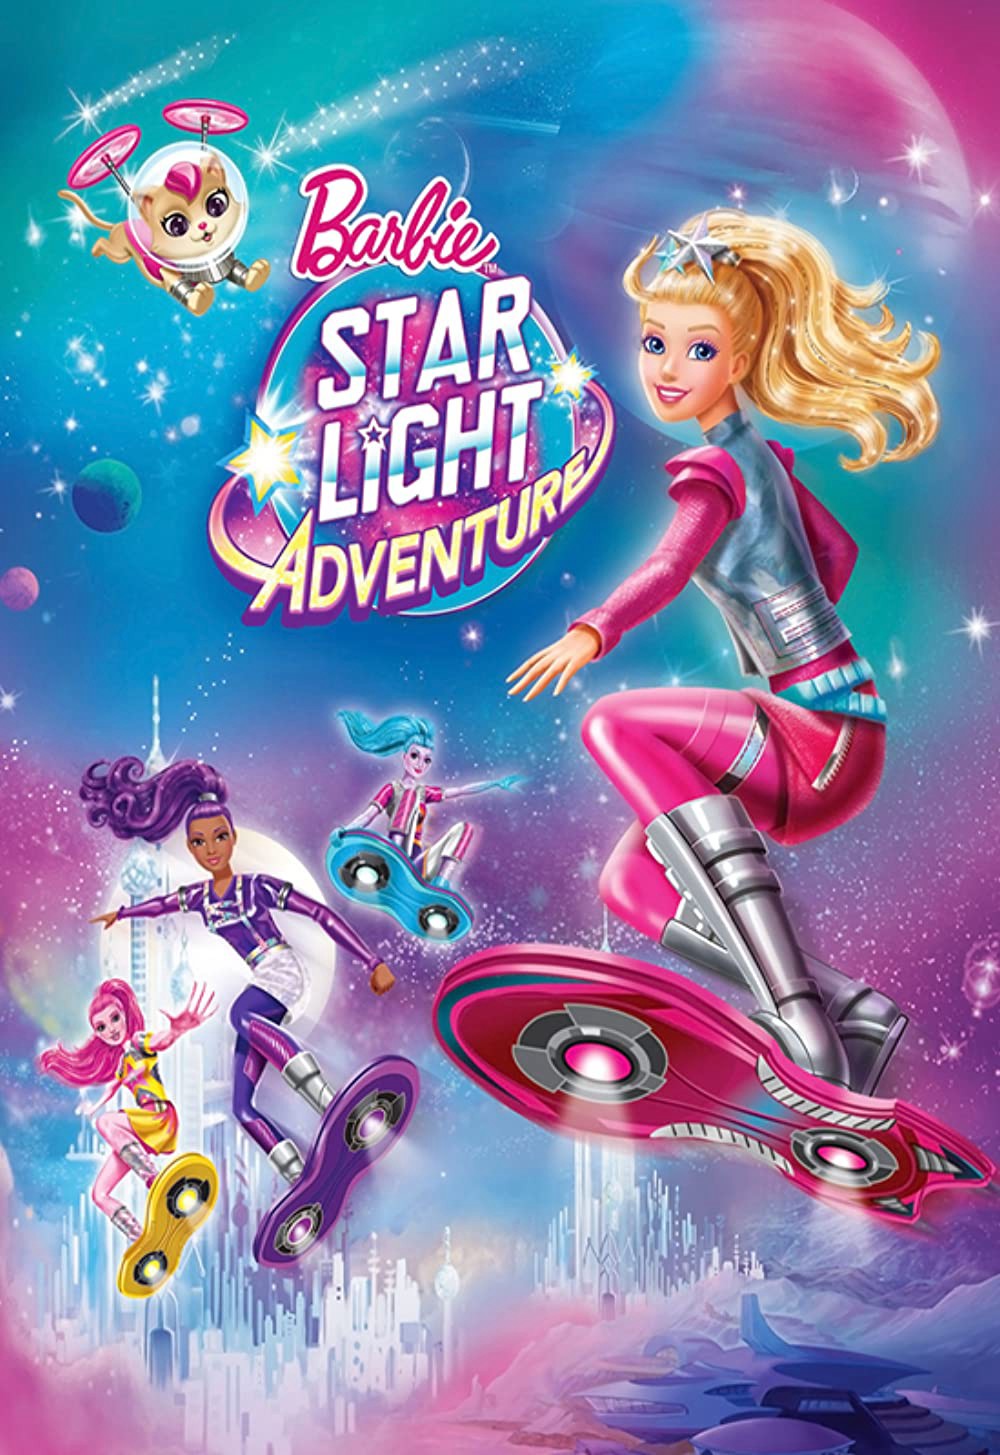 Barbie: Cuộc Chiến Ngoài Không Gian - Barbie: Star Light Adventure (2016)